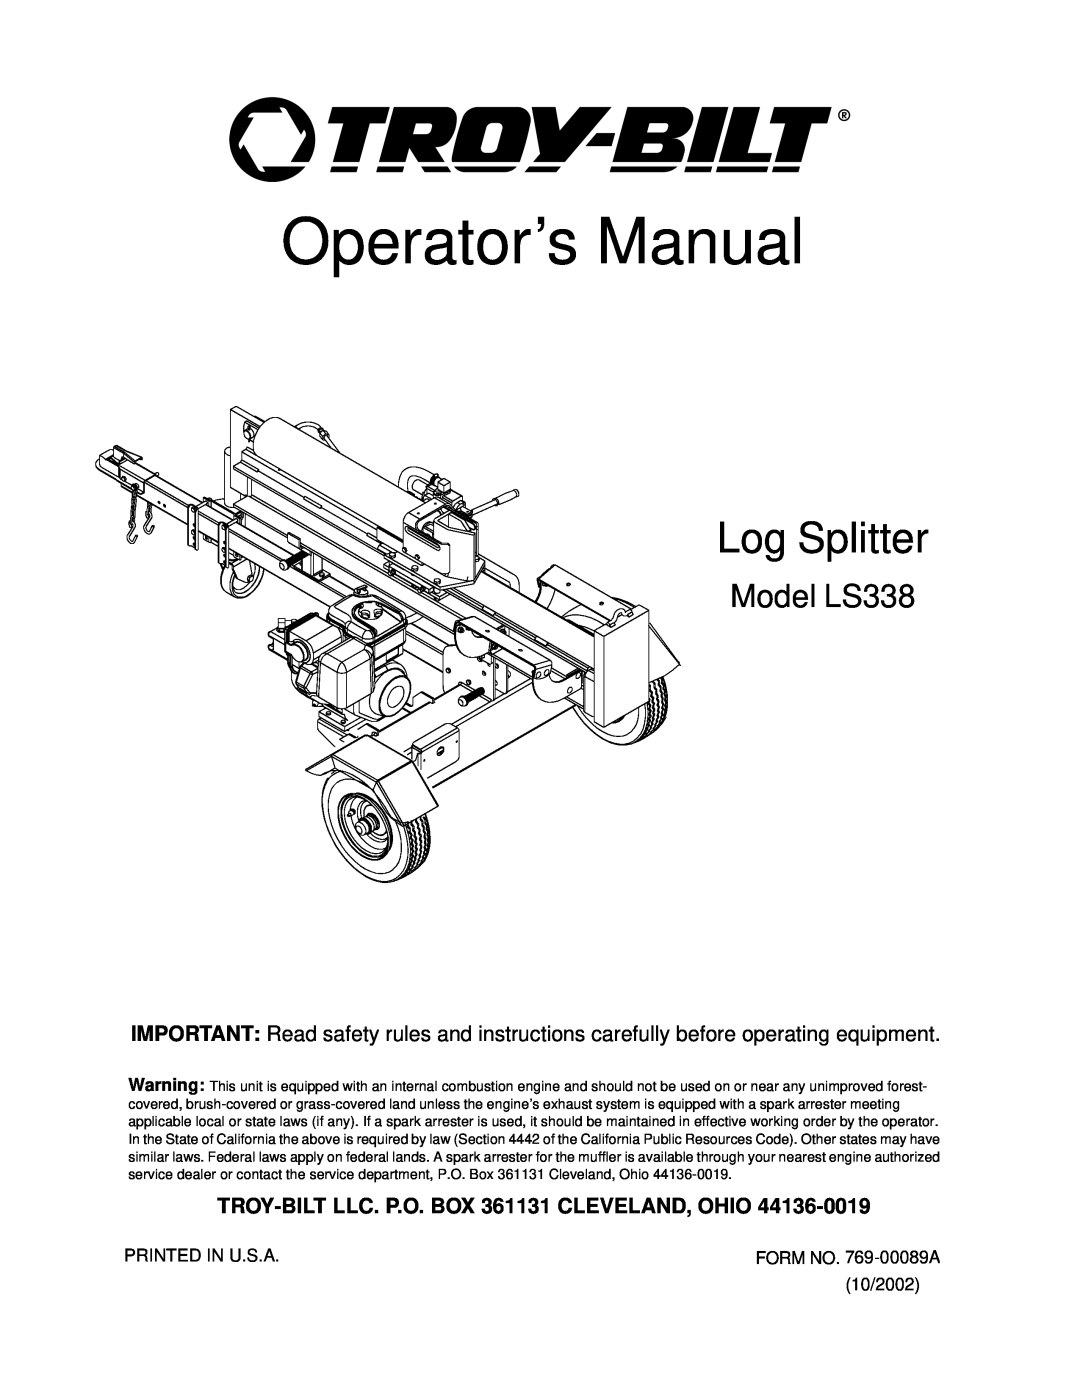 Troy-Bilt manual Model LS338, TROY-BILT LLC. P.O. BOX 361131 CLEVELAND, OHIO, Operator’s Manual, Log Splitter 